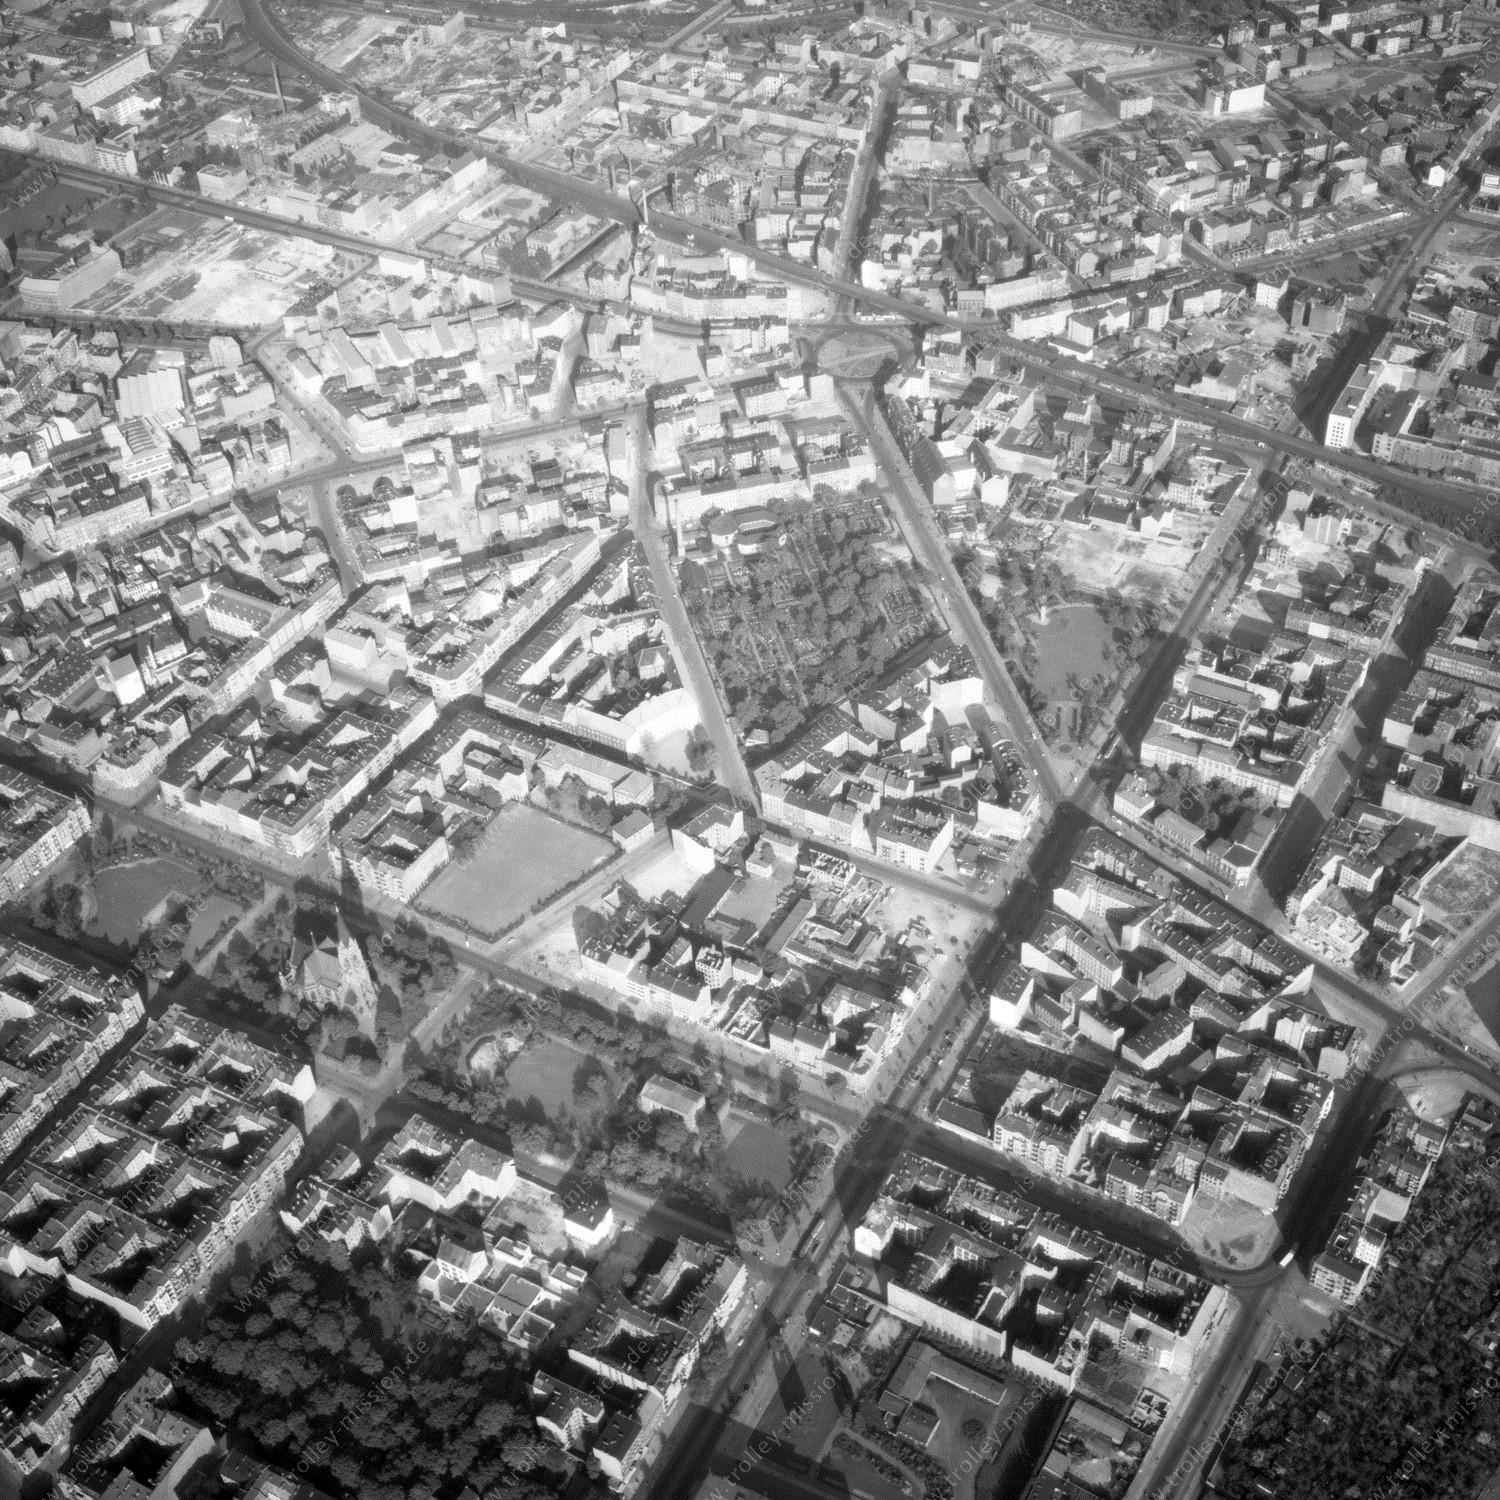 Alte Fotos und Luftbilder von Berlin - Luftbildaufnahme Nr. 09 - Historische Luftaufnahmen von West-Berlin aus dem Jahr 1954 - Flugstrecke Papa